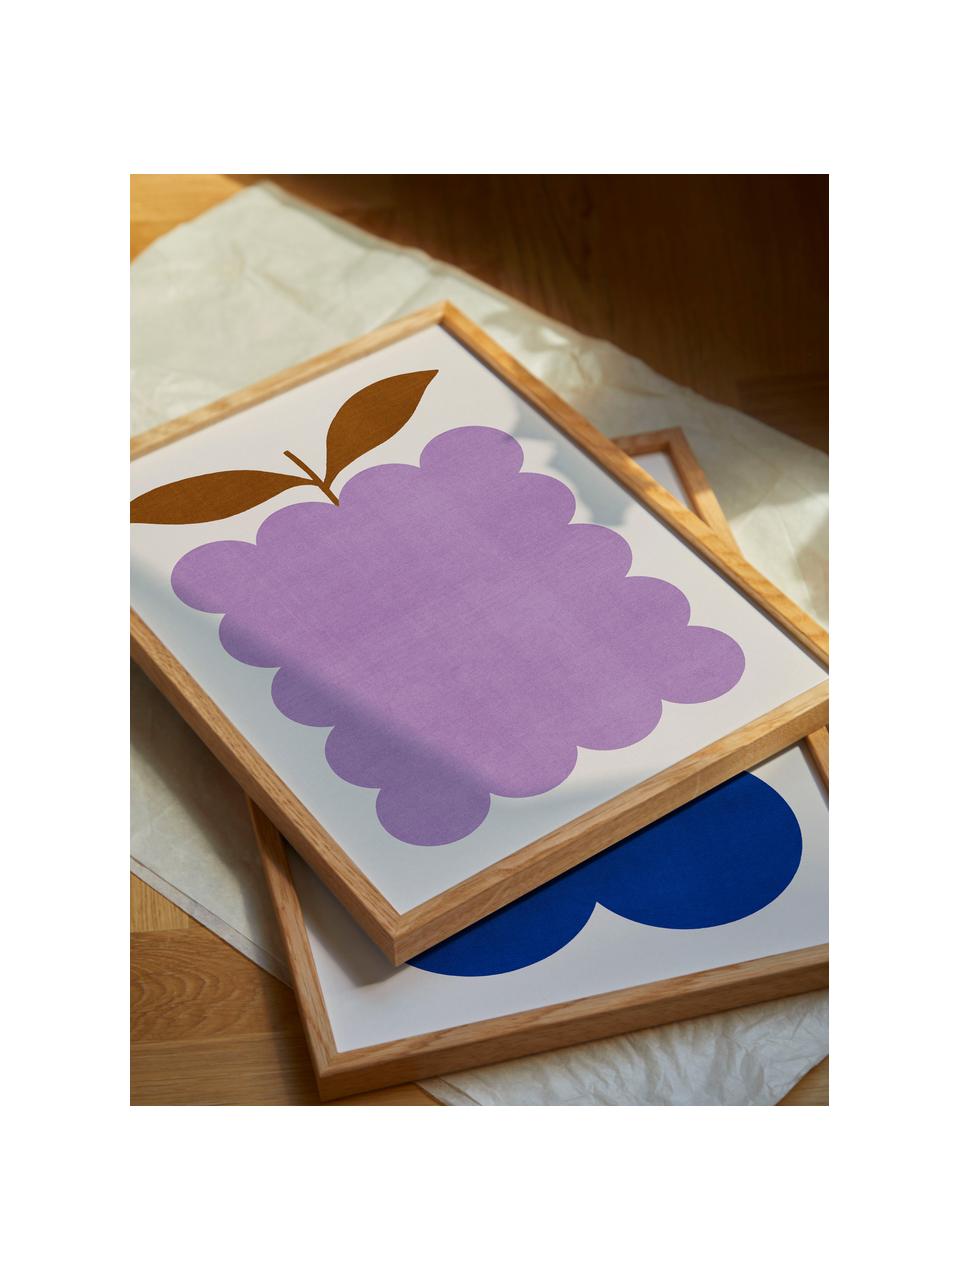 Plakát Lilac Berry, 210g matný papír Hahnemühle, digitální tisk s 10 barvami odolnými vůči UV záření, Fialová, světle béžová, Š 30 cm, V 40 cm